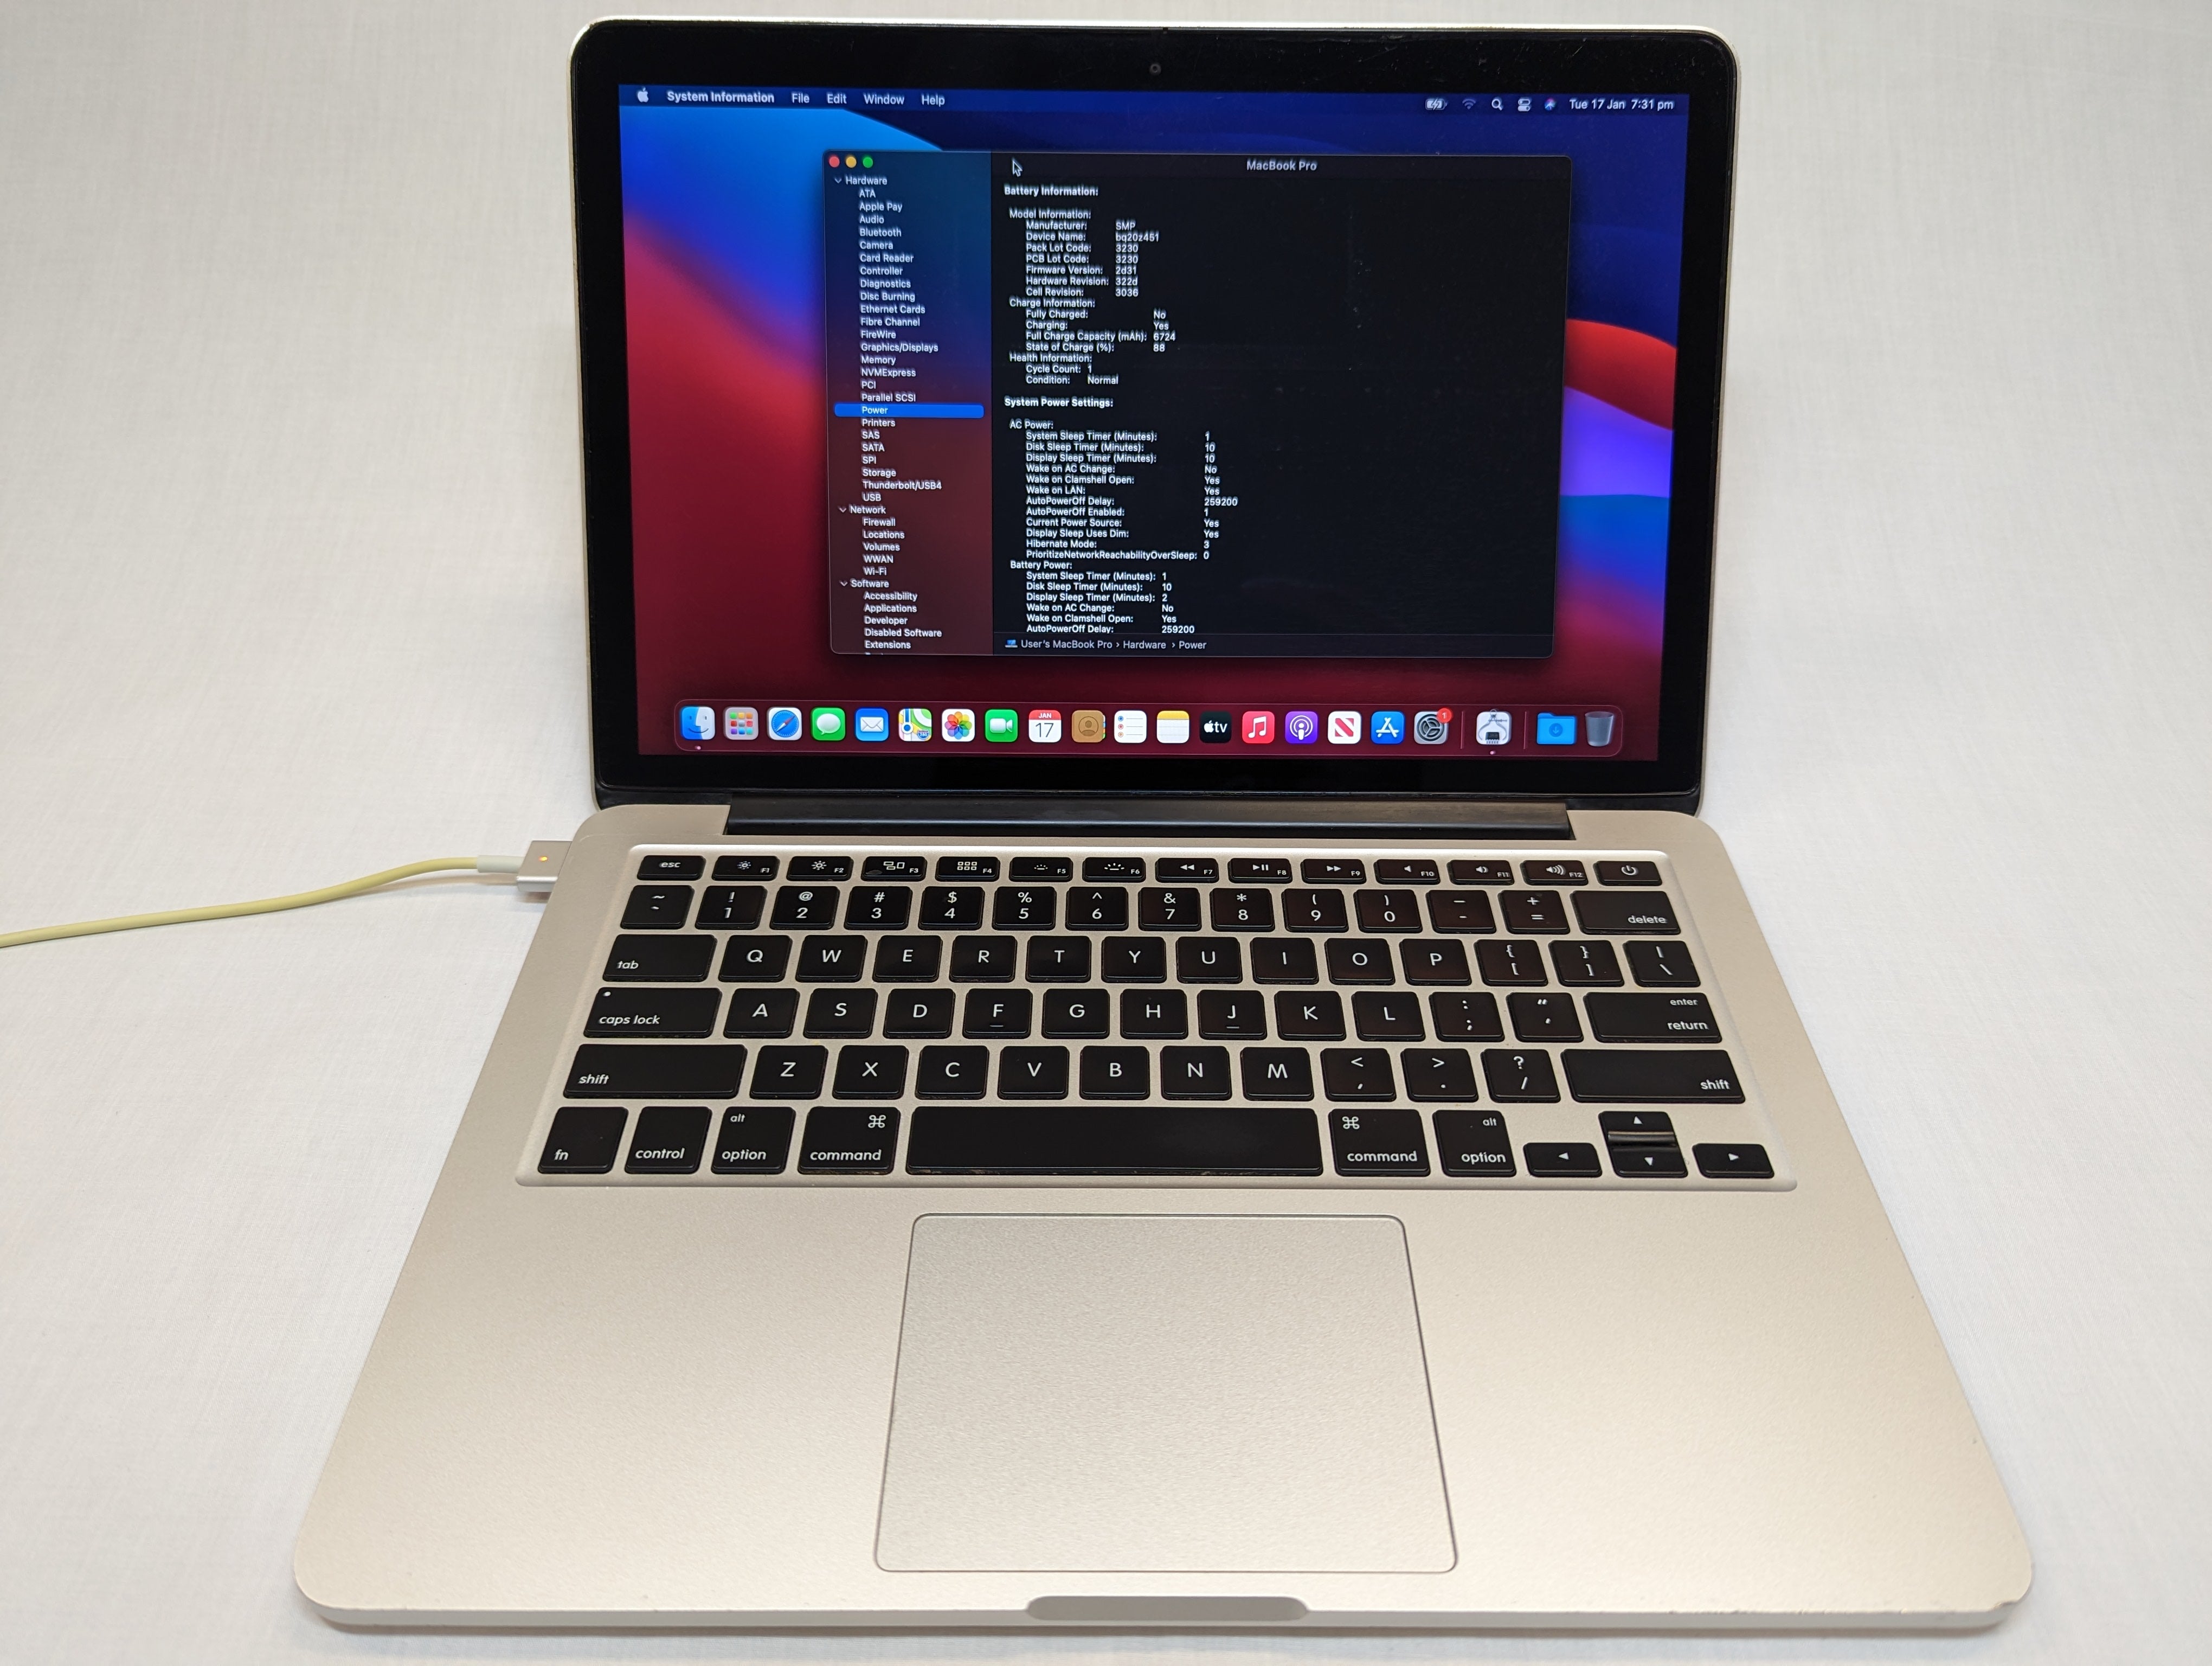 MacBook Pro Retina 13 inch (Mid 2014) - i5, 8GB RAM, 256GB SSD